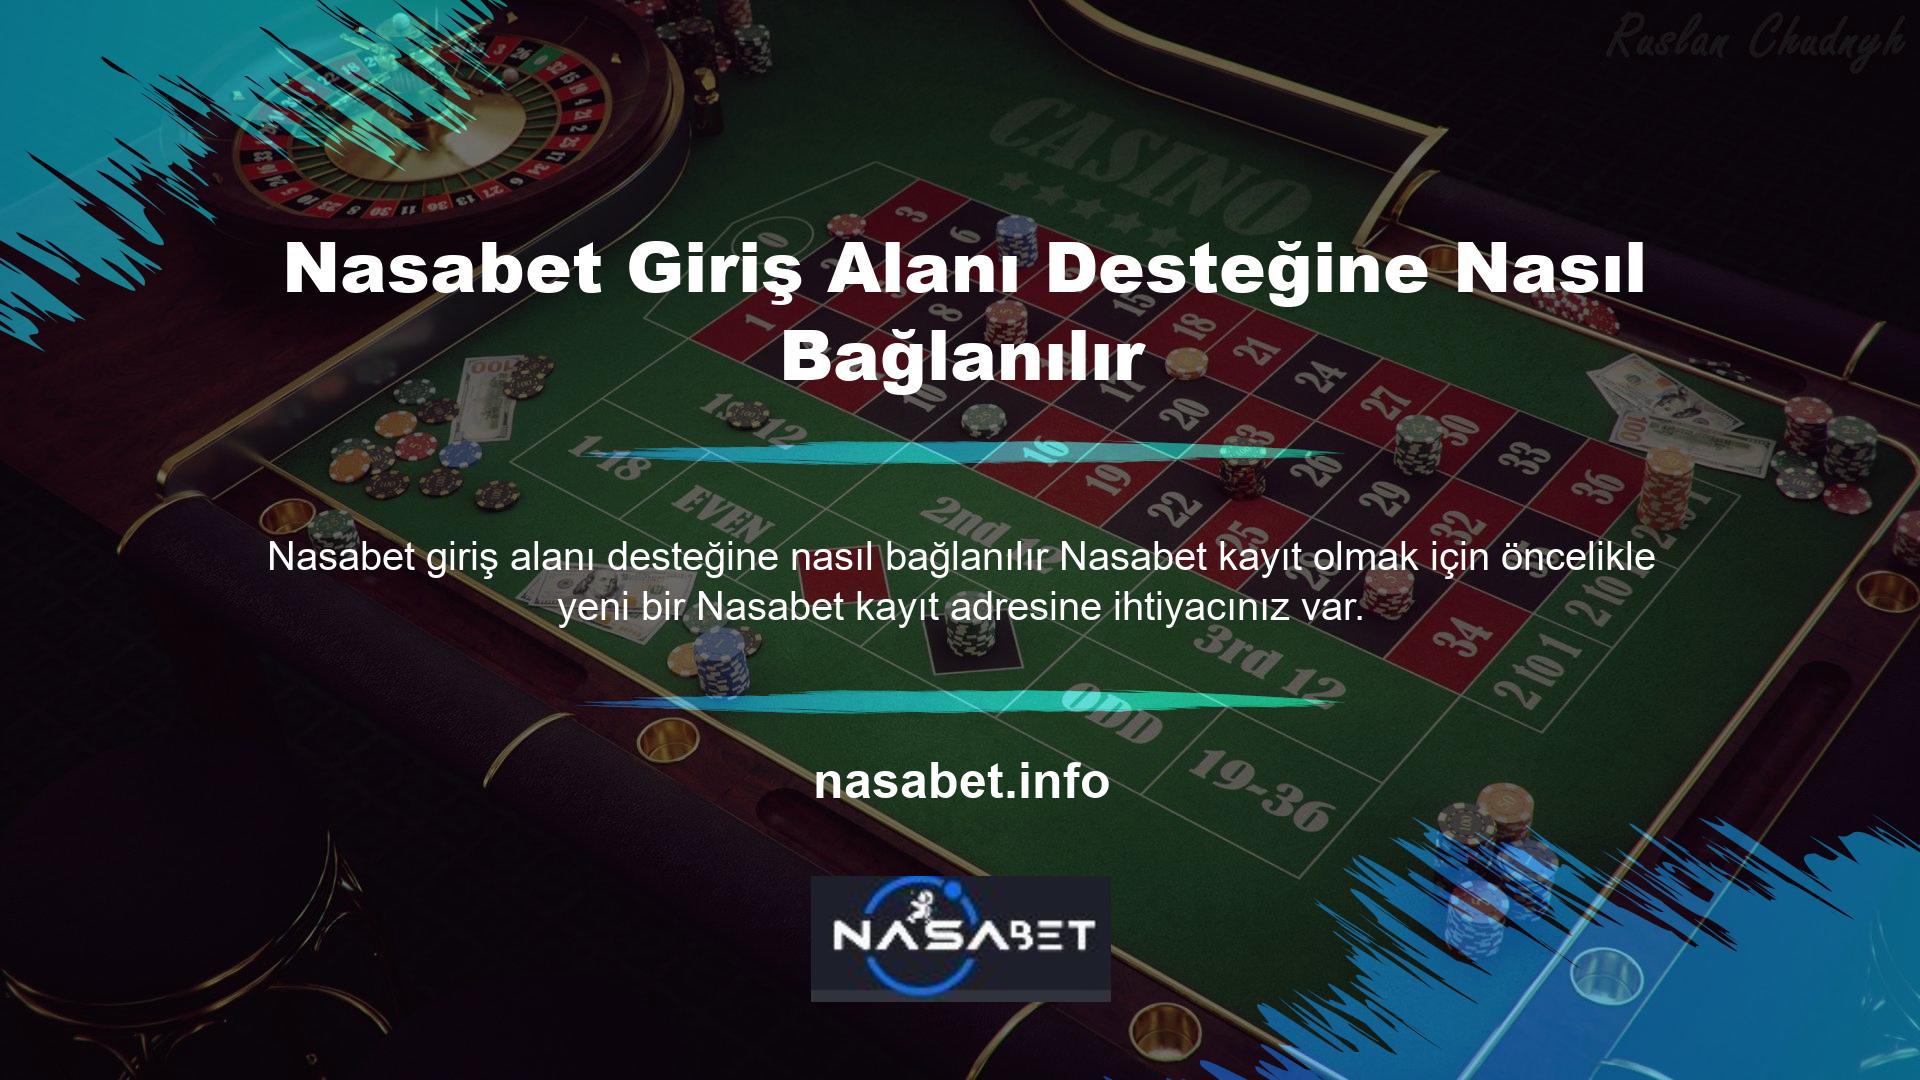 Yabancı casino siteleri Türkiye'de genellikle engellenir, bu nedenle giriş adresiniz değişirse en son adresi bulmak önemlidir